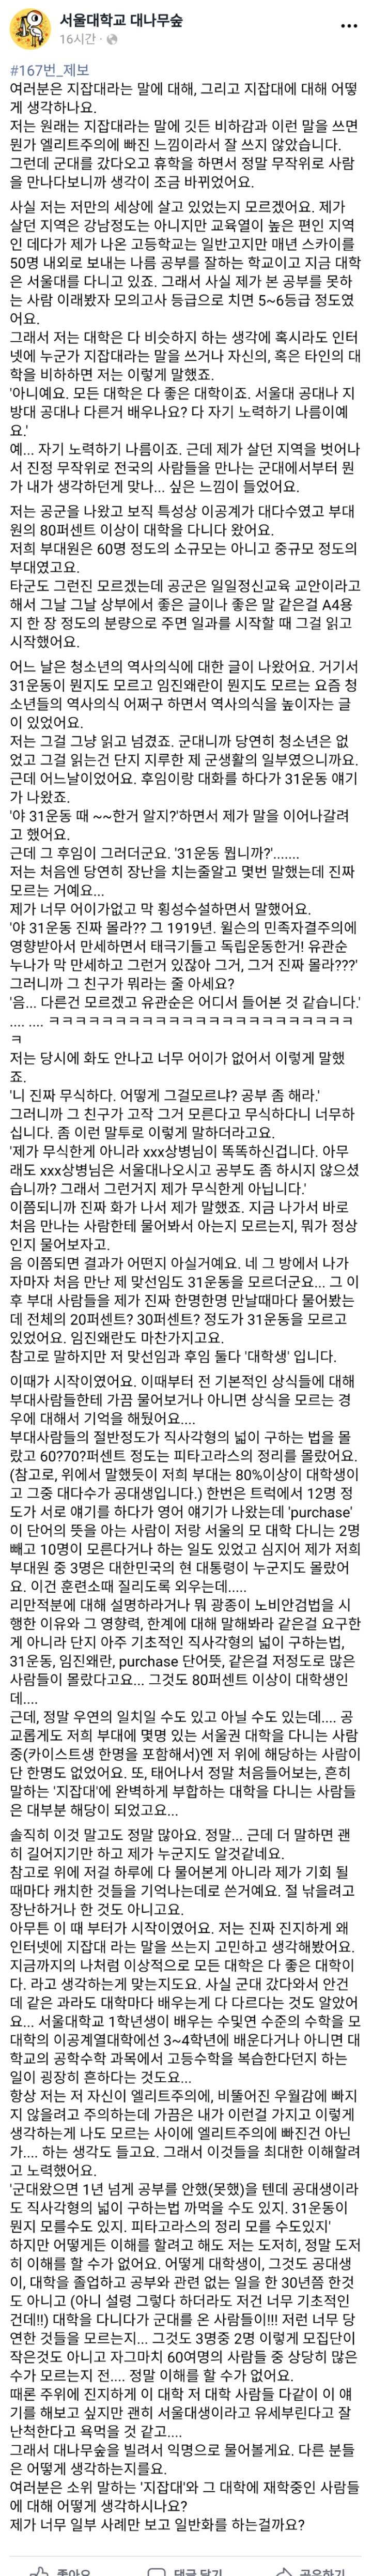 서울대생이 군대 갔다온 후기....jpg | 인스티즈